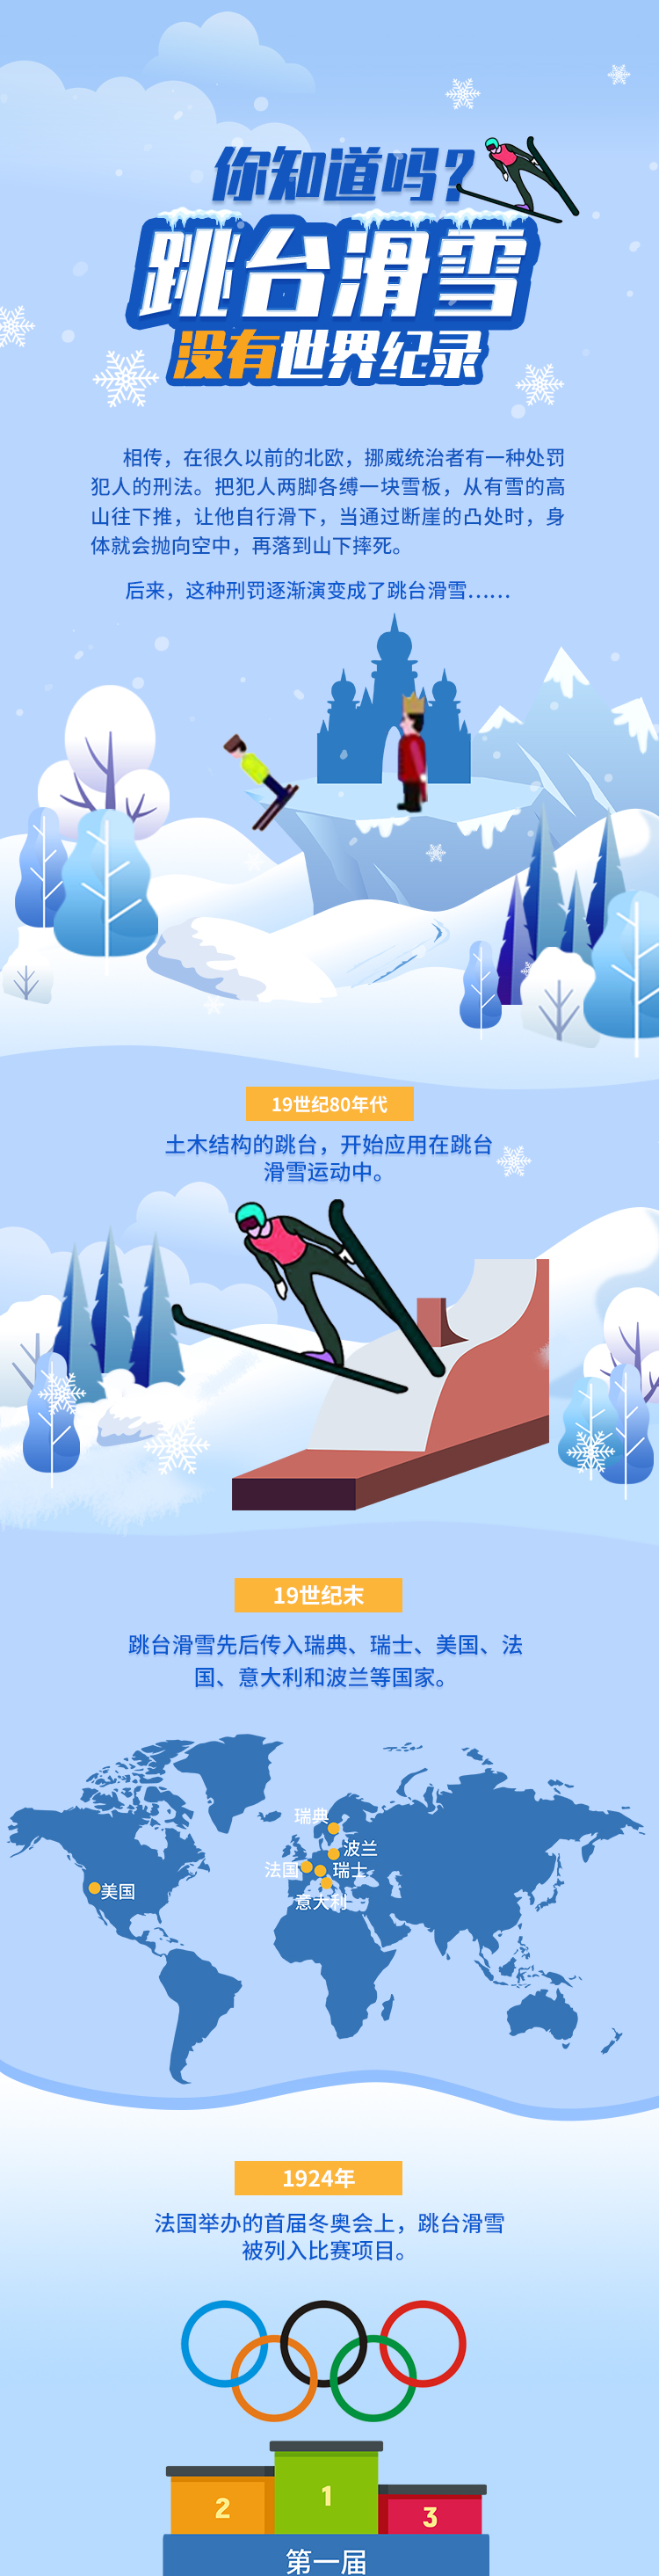 跳台滑雪01